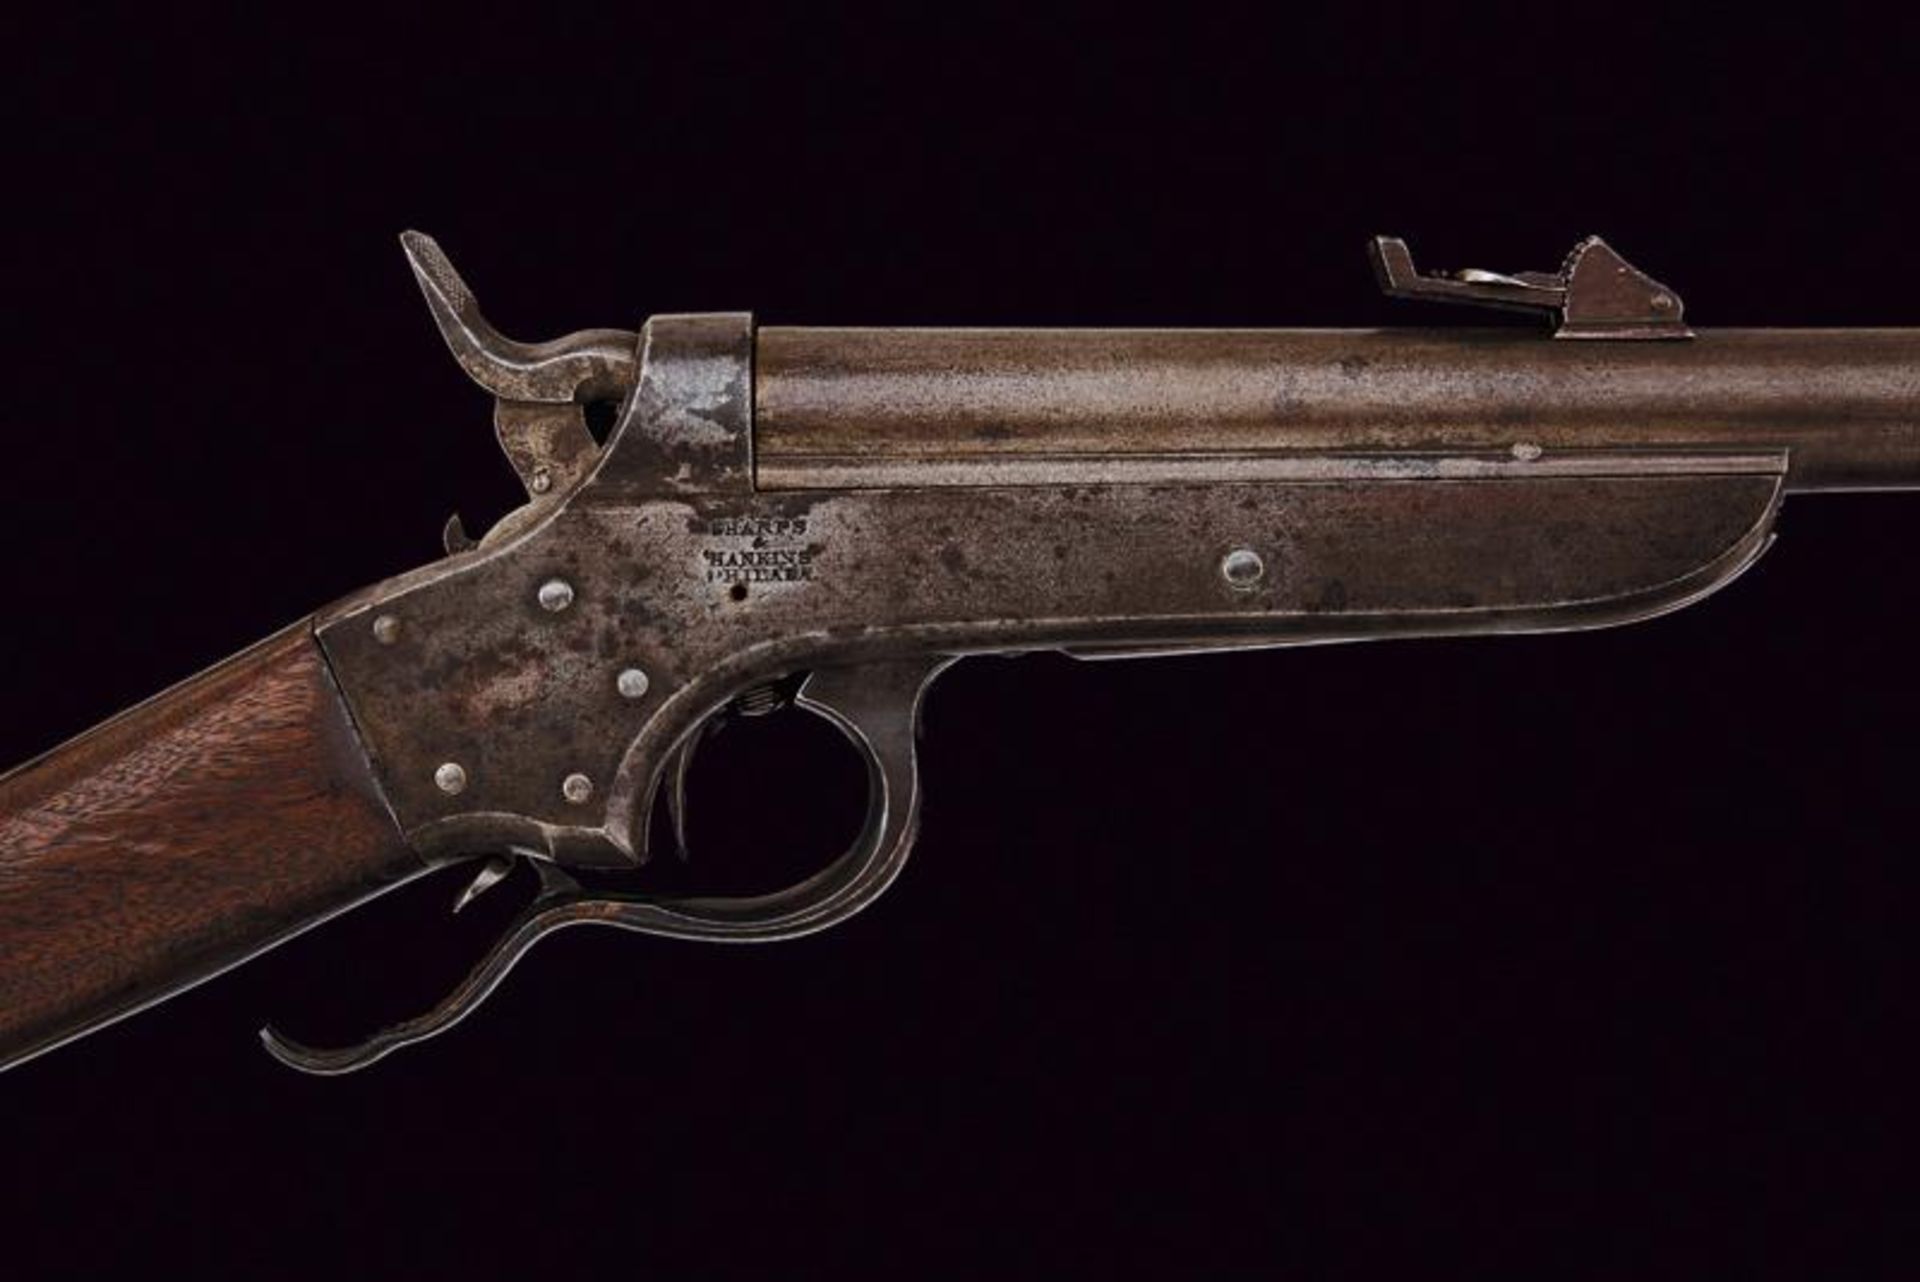 Sharps & Hankins model 1862 Carbine - Image 2 of 6